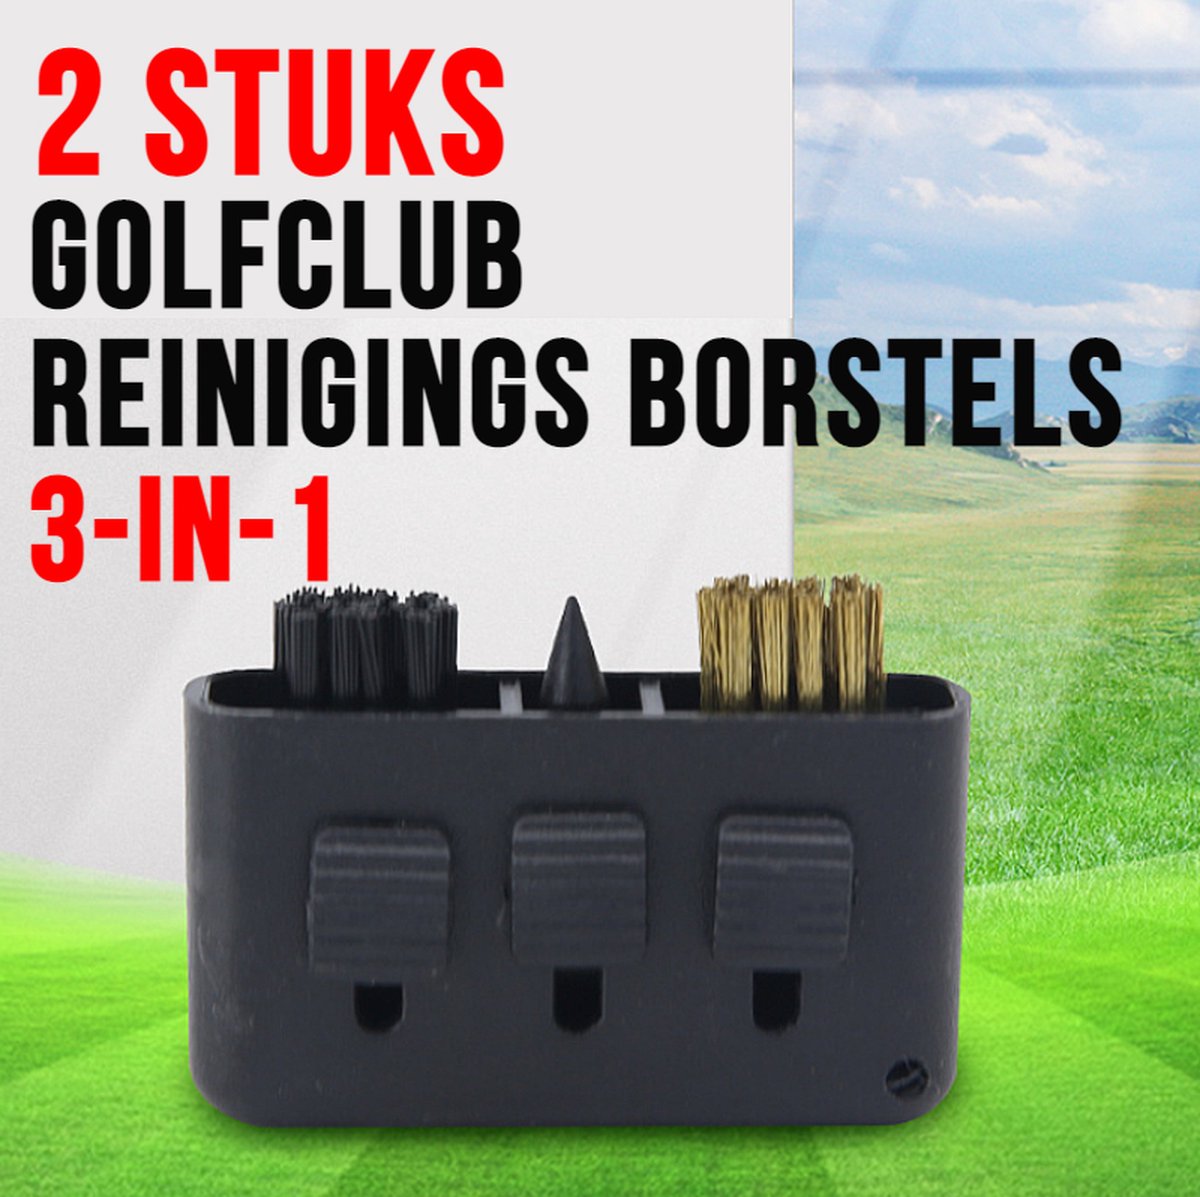 Allernieuwste 2 STUKS 3-in-1 Golfclub Reinigingsborstels ZWART - Handige Golfclub Borstel - Golfclub Reiniger - Golf Borstel - Zwart